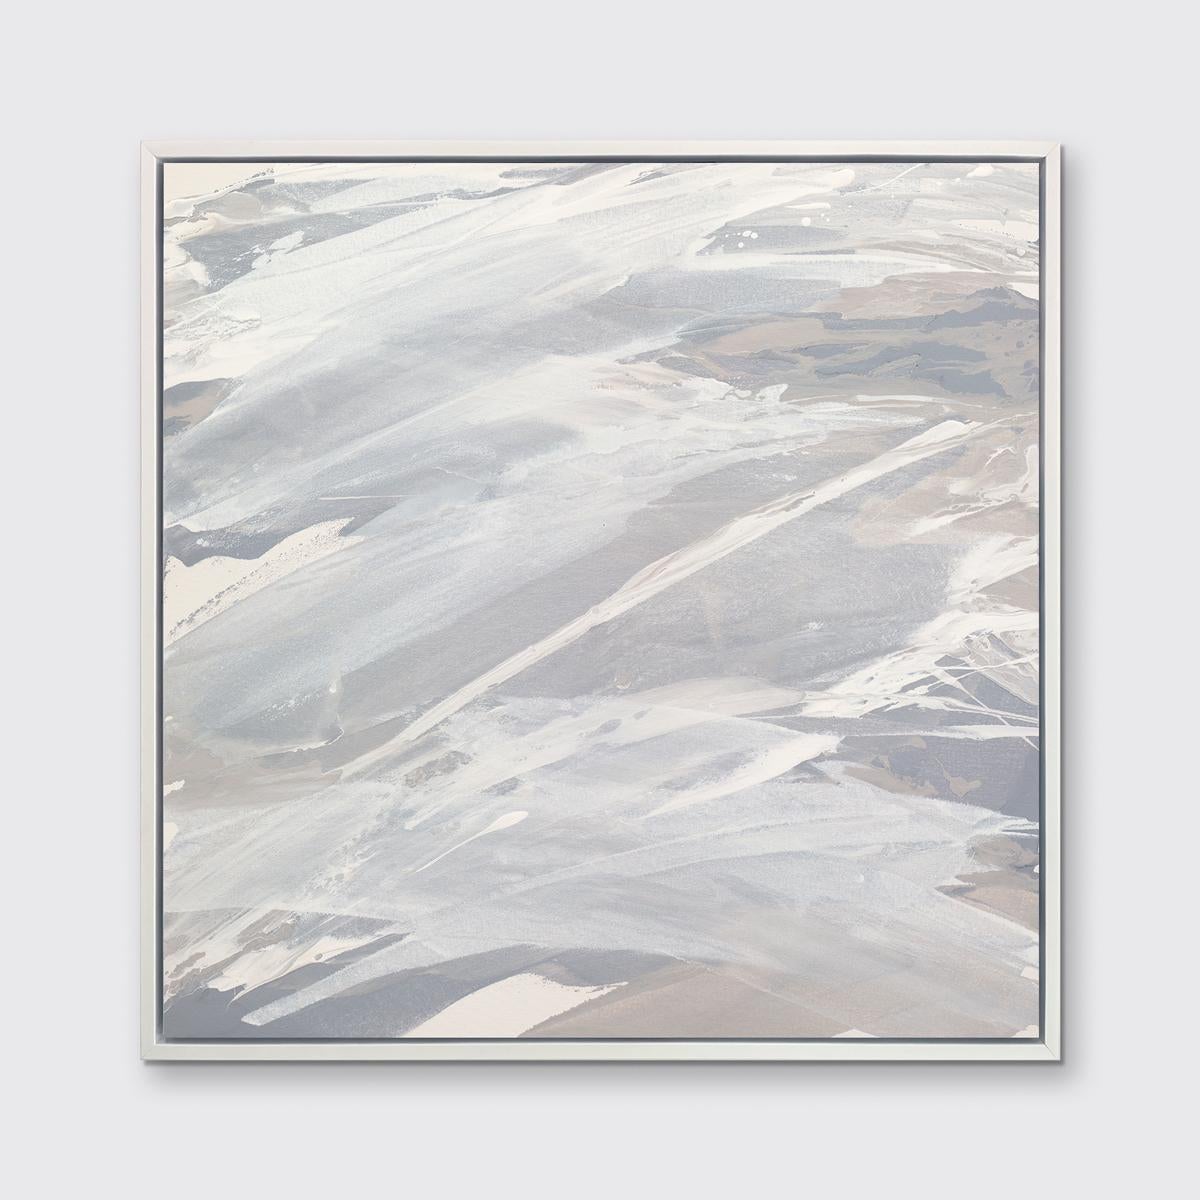 Dieser zeitgenössische Druck in limitierter Auflage von Teodora Guererra zeichnet sich durch eine warme Grau- und Weißpalette mit Schichten neutraler Farben aus, die fast über die Komposition spritzen. Dieser Druck passt hervorragend zu der